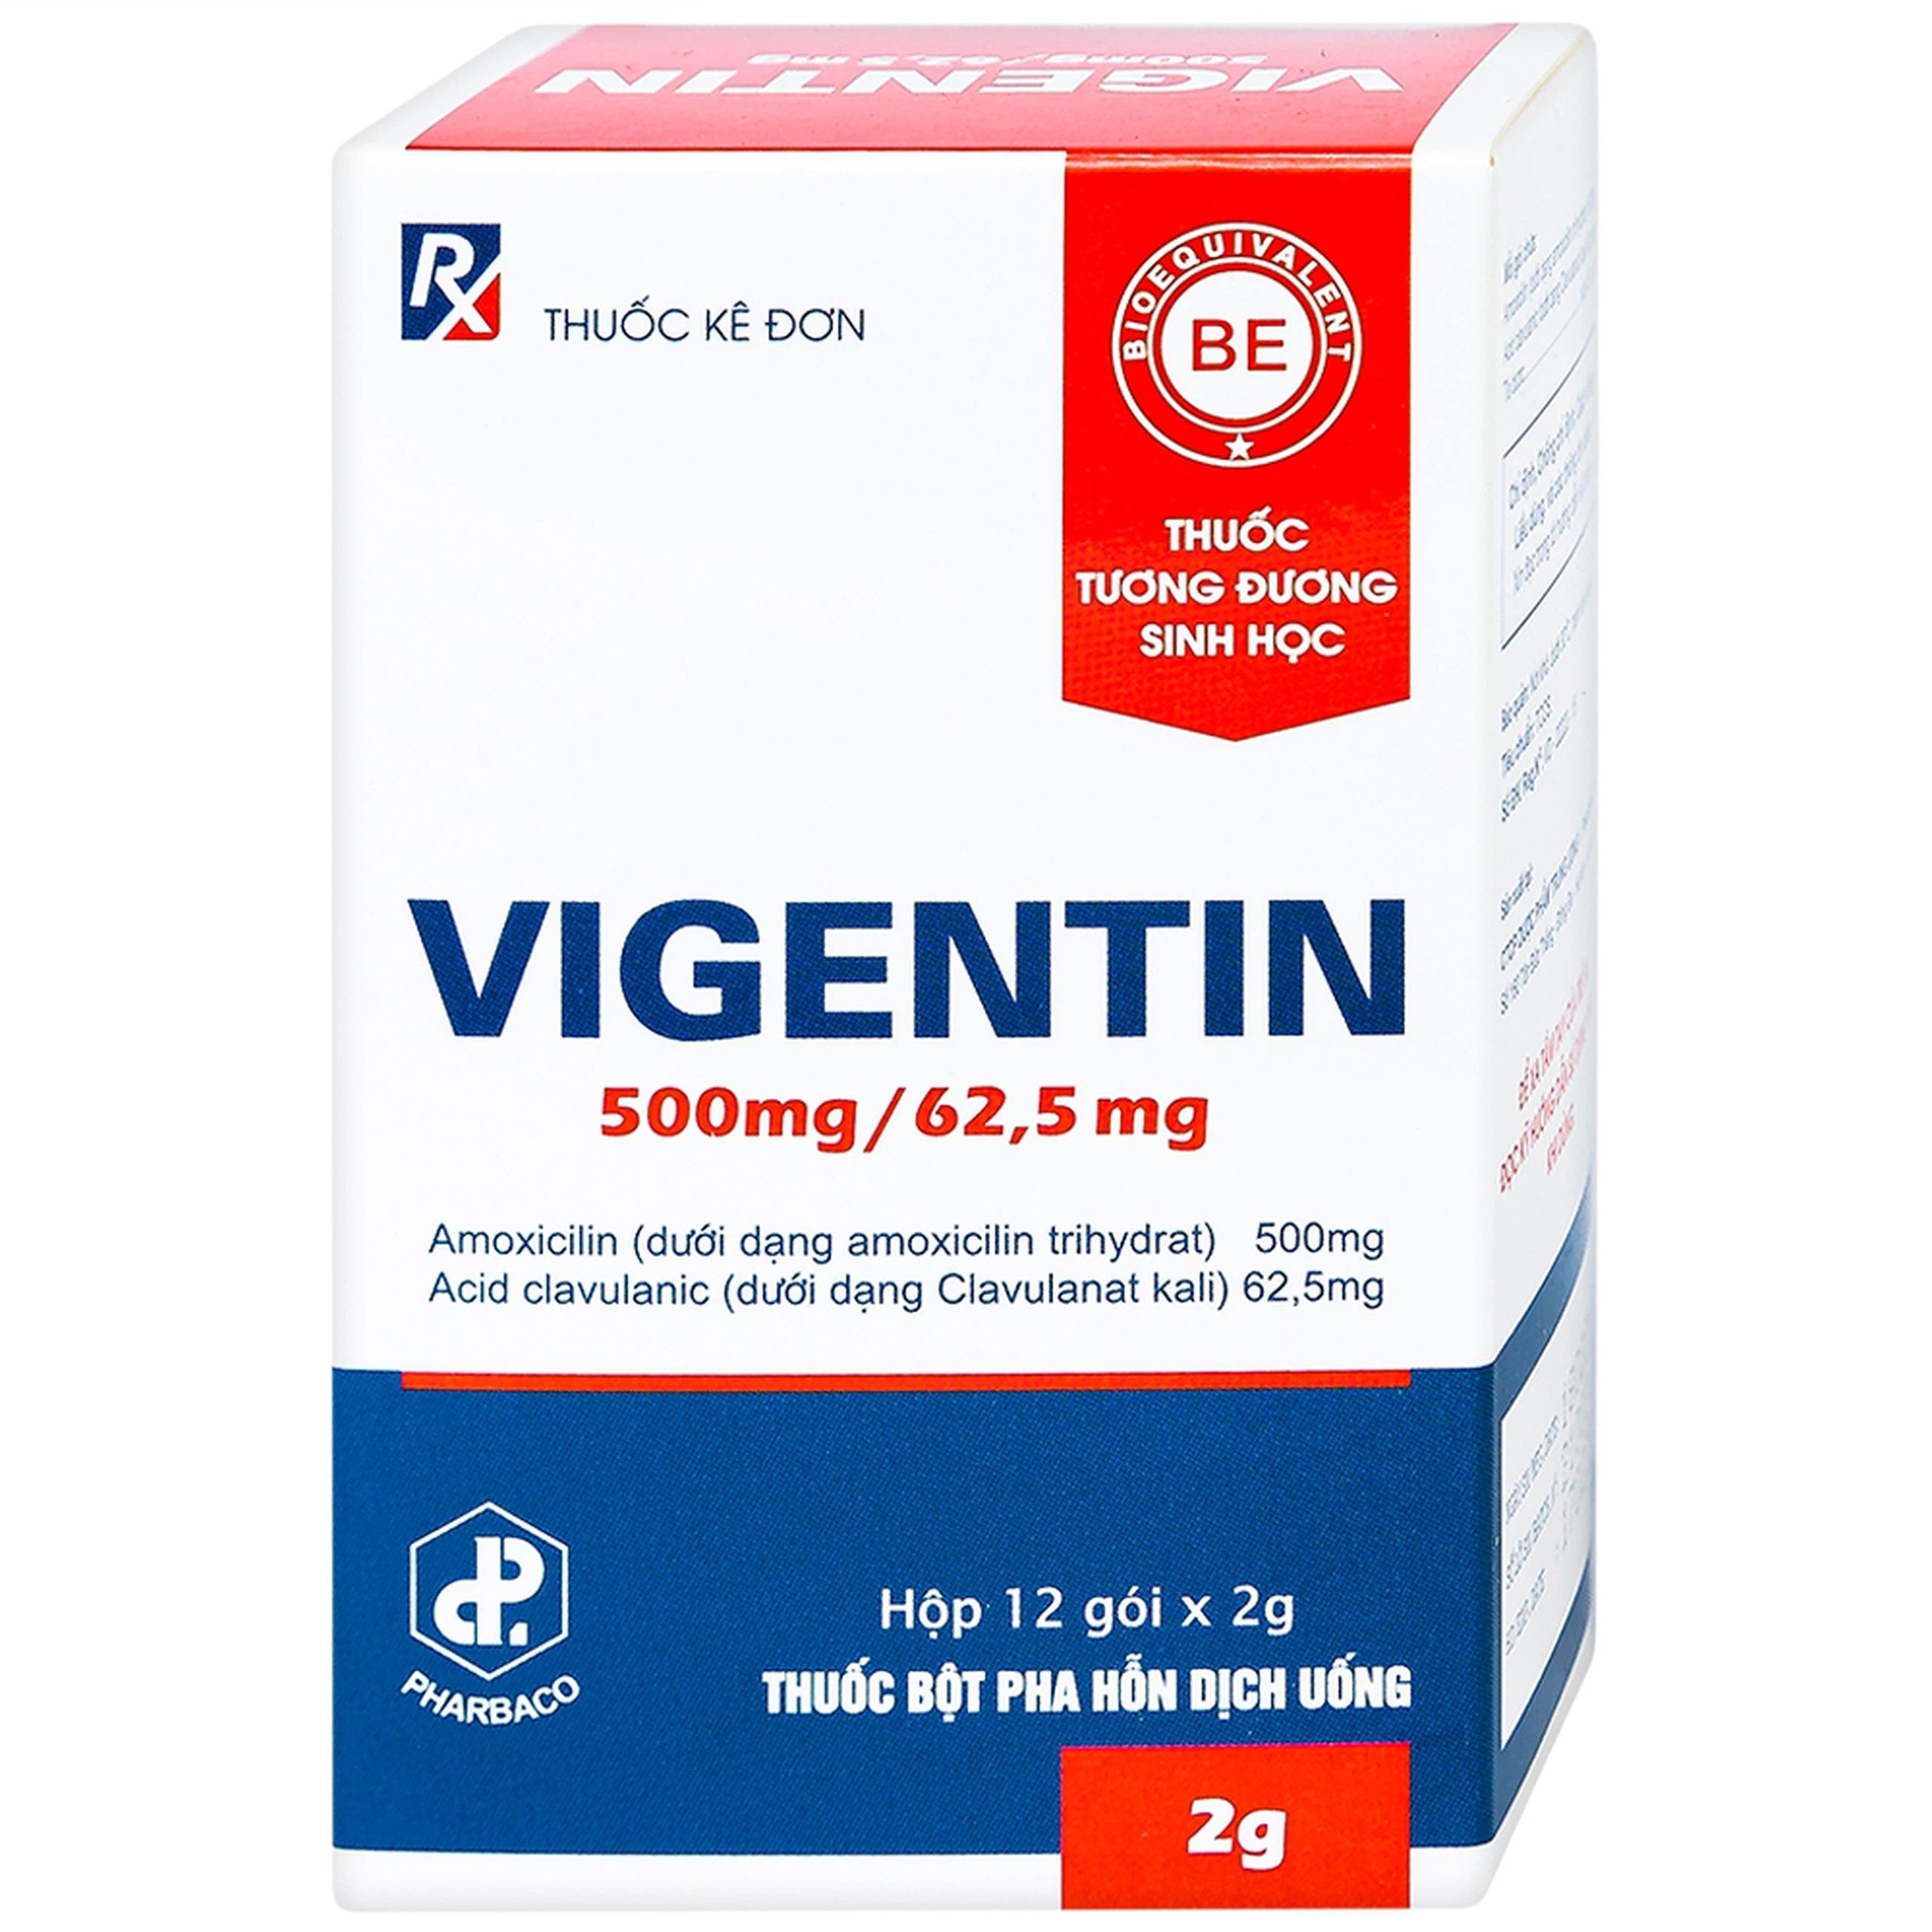 Thuốc bột pha hỗn dịch uống Vigentin 500mg/62,5mg Pharbaco điều trị các chứng nhiễm khuẩn (12 gói x 2g)